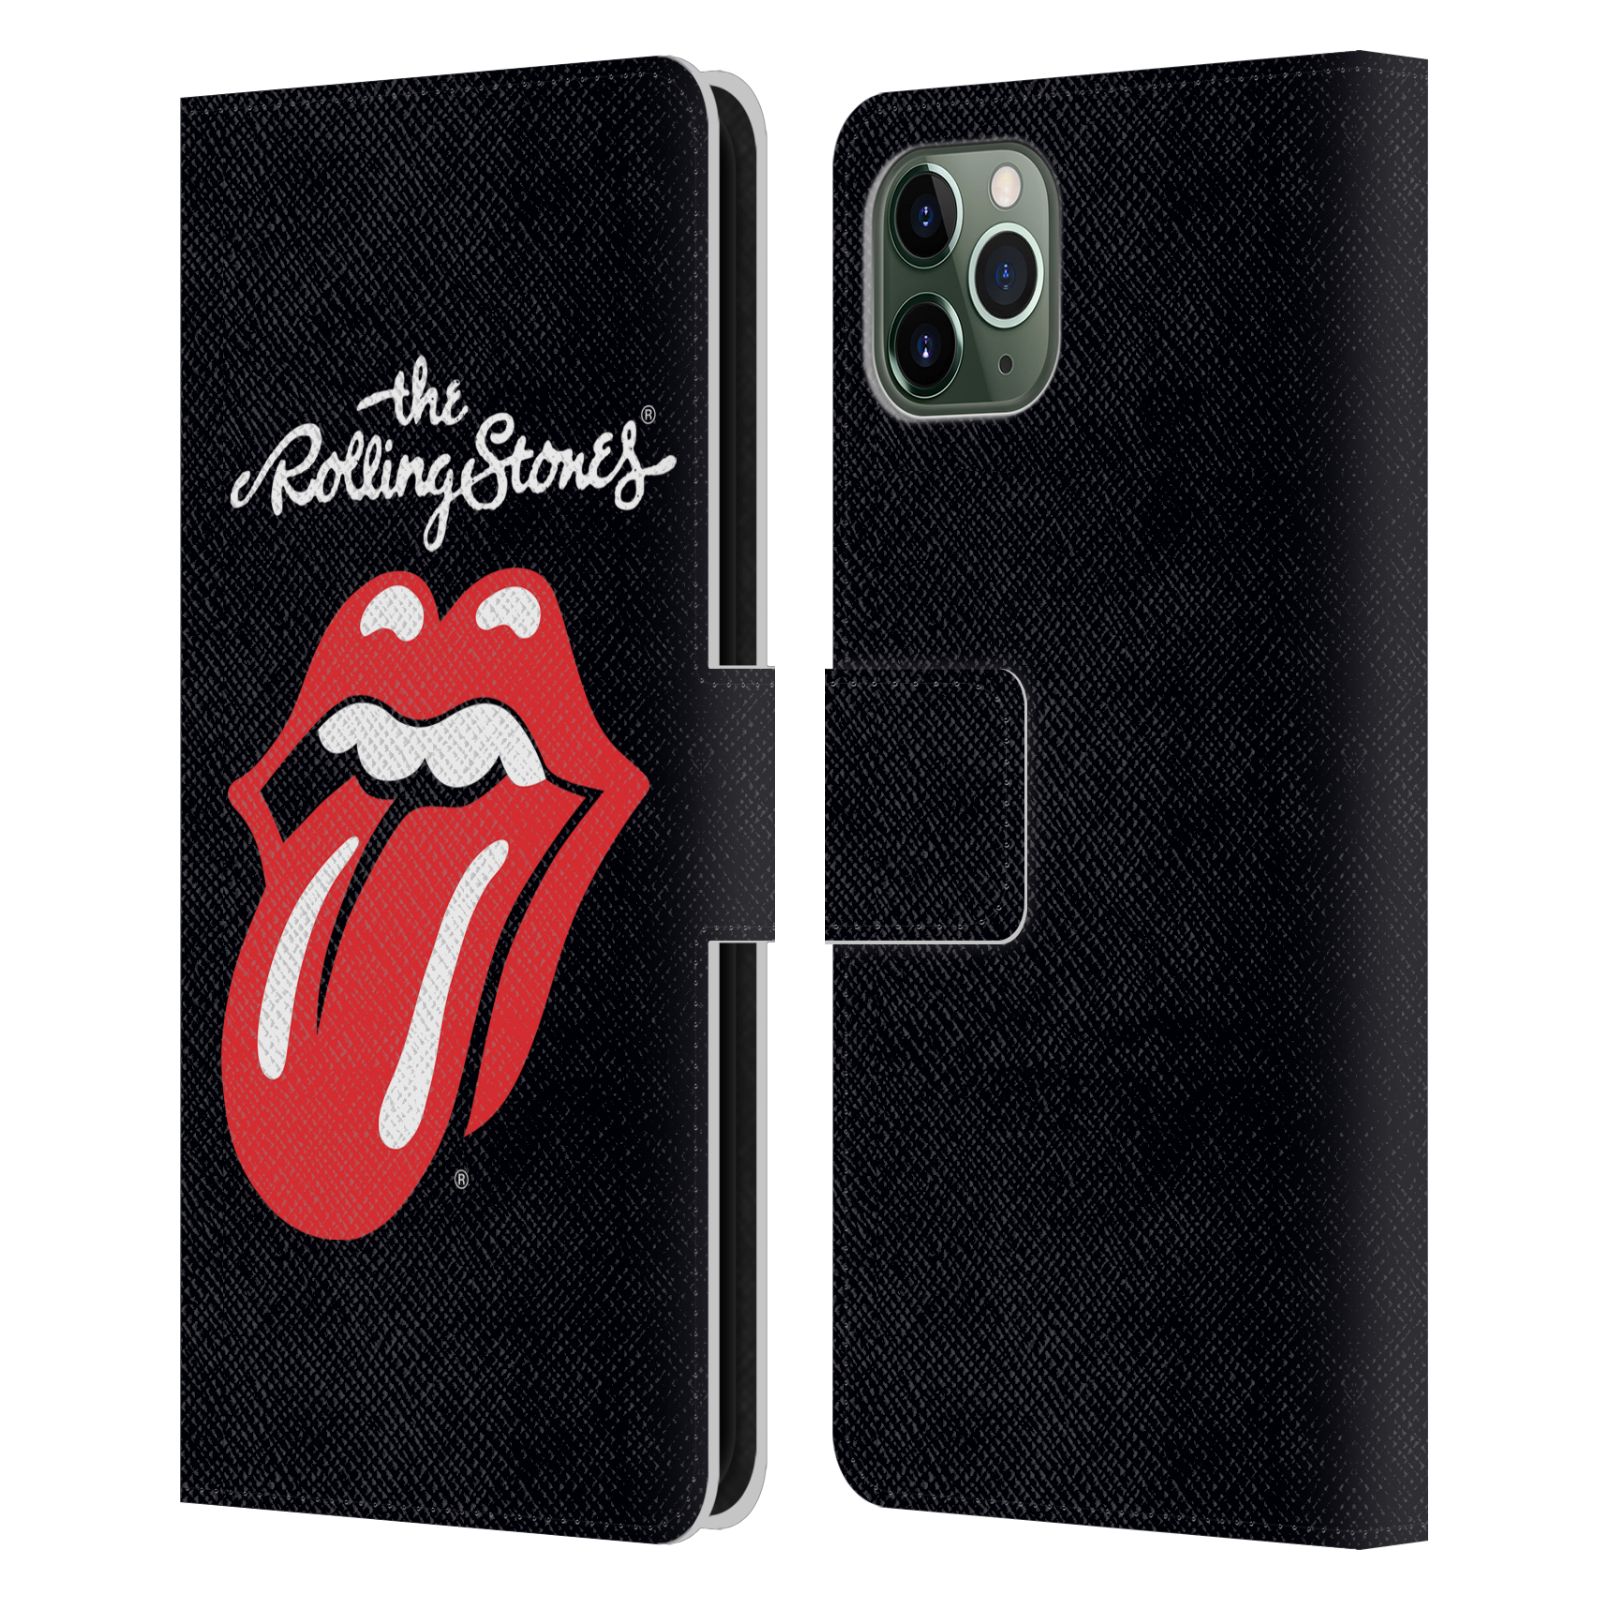 Pouzdro na mobil Apple Iphone 11 PRO MAX - Head Case - Rolling Stones - Logo černé pozadí